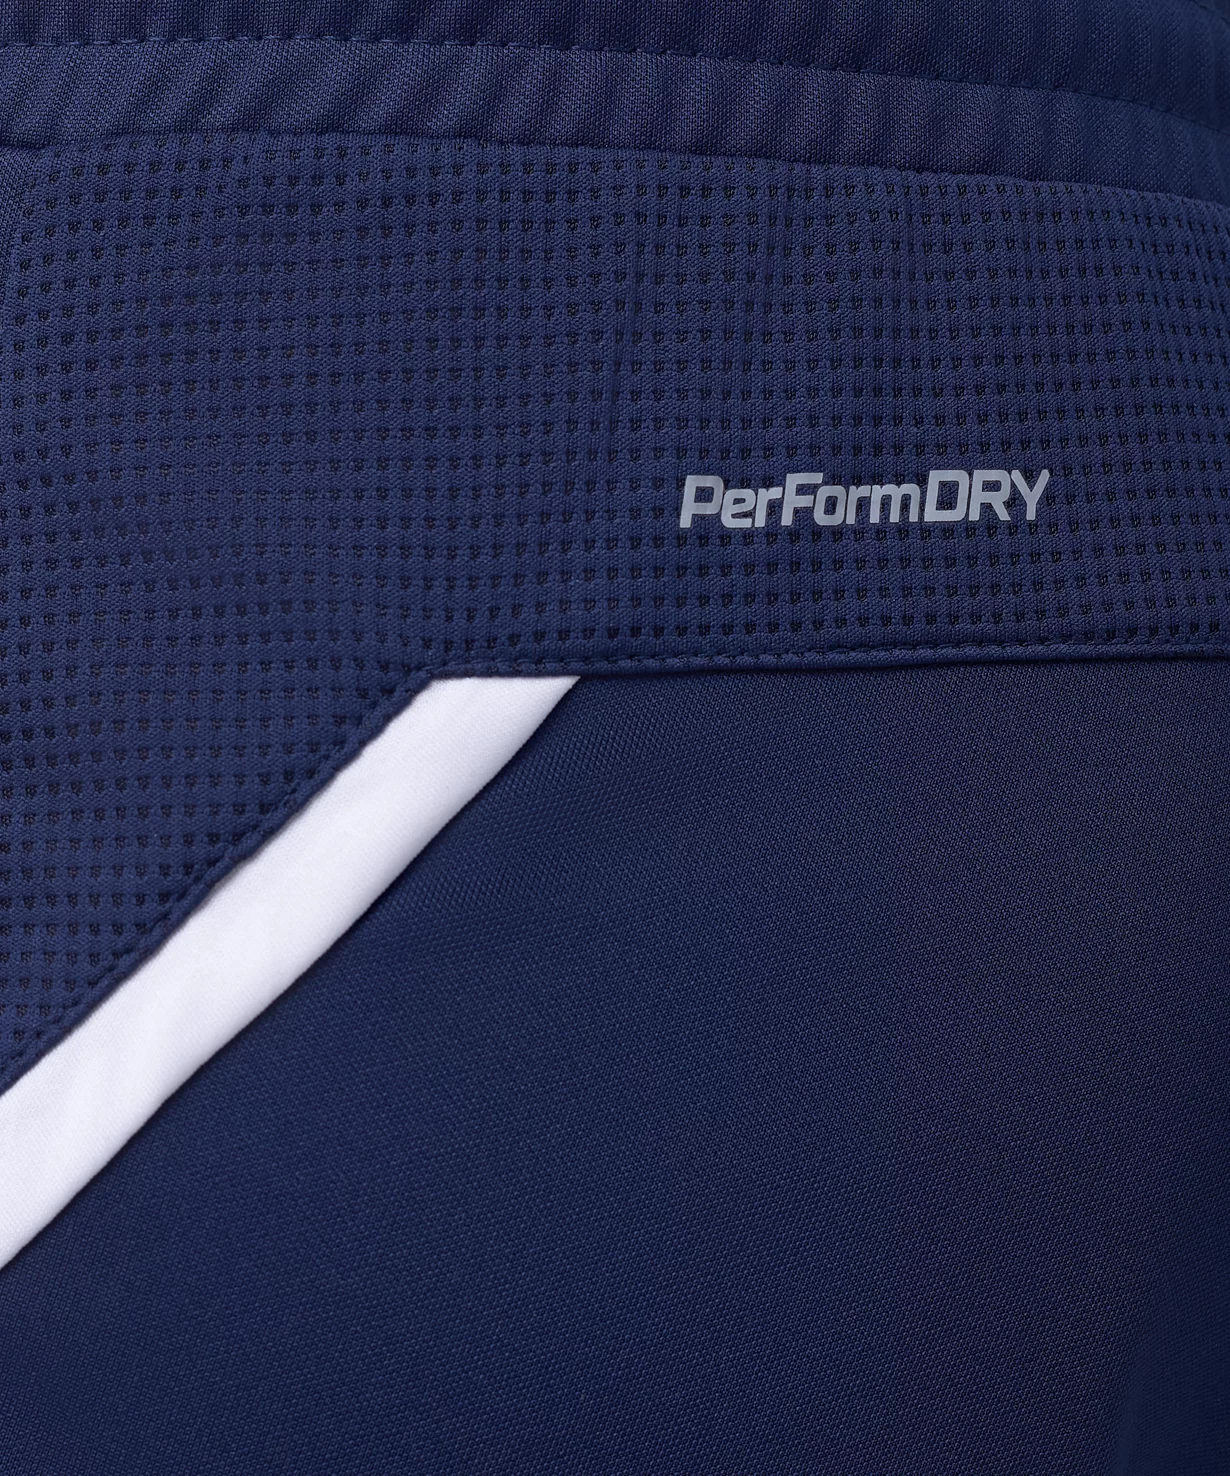 Реальное фото Брюки тренировочные DIVISION PerFormDRY Pro Training Pants, темно-синий Jögel от магазина СпортЕВ